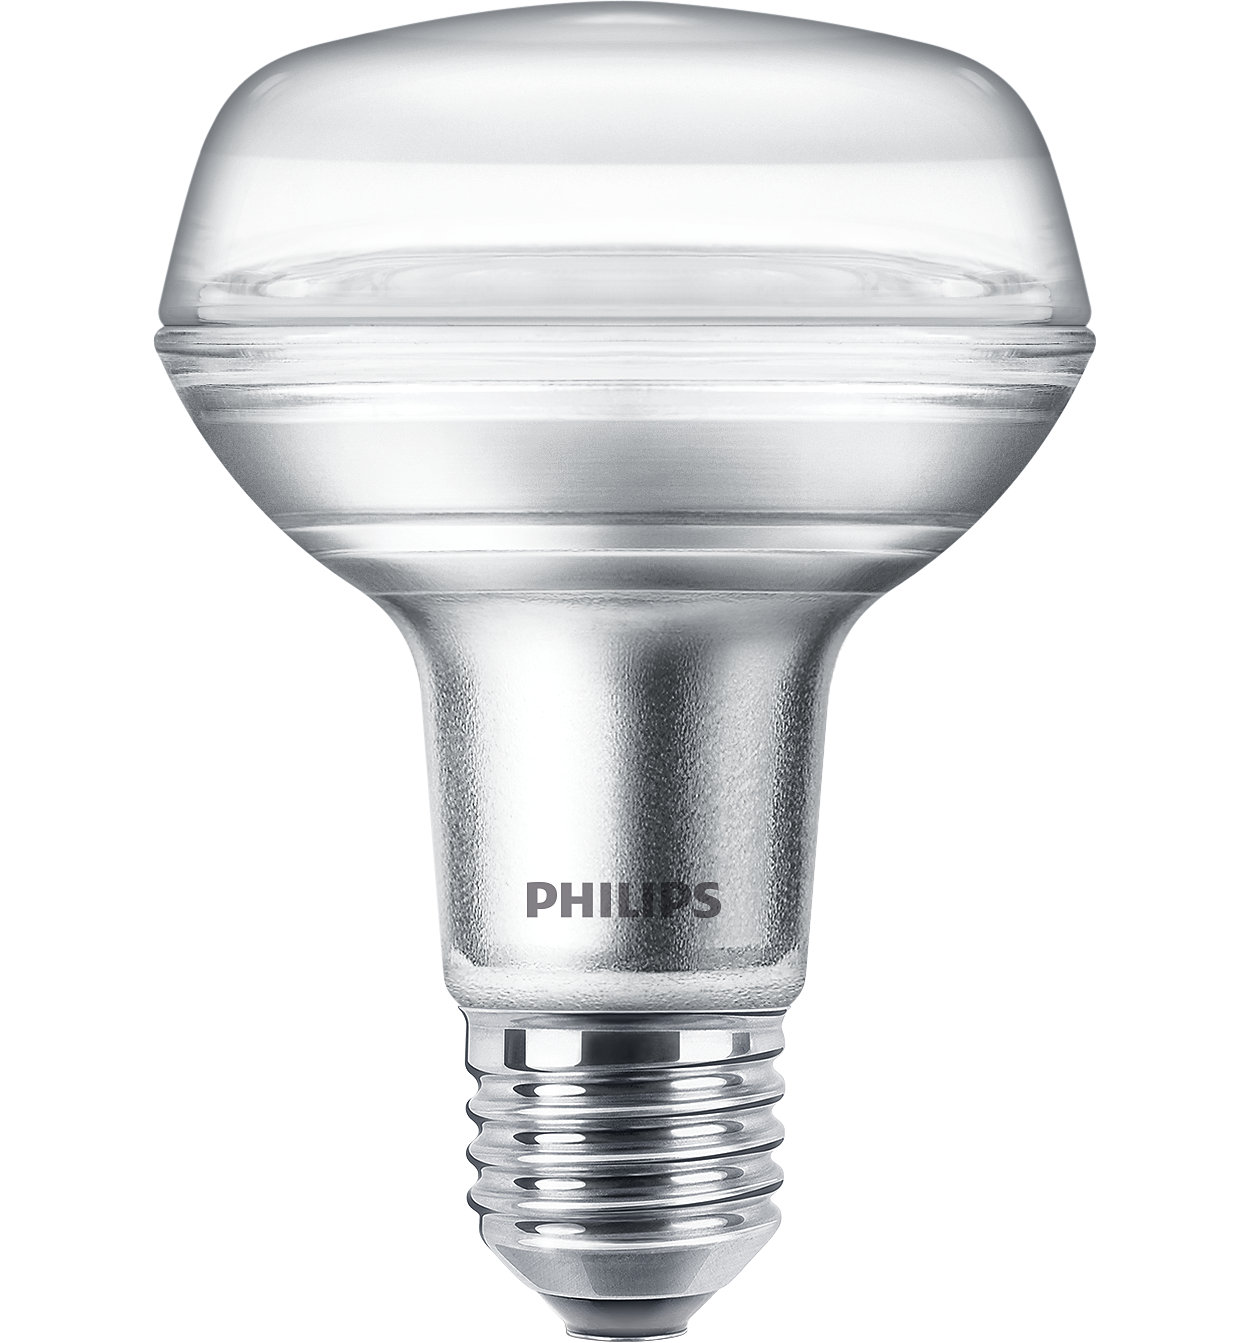 Duurzame LED-lamp met een gerichte, heldere lichtbundel